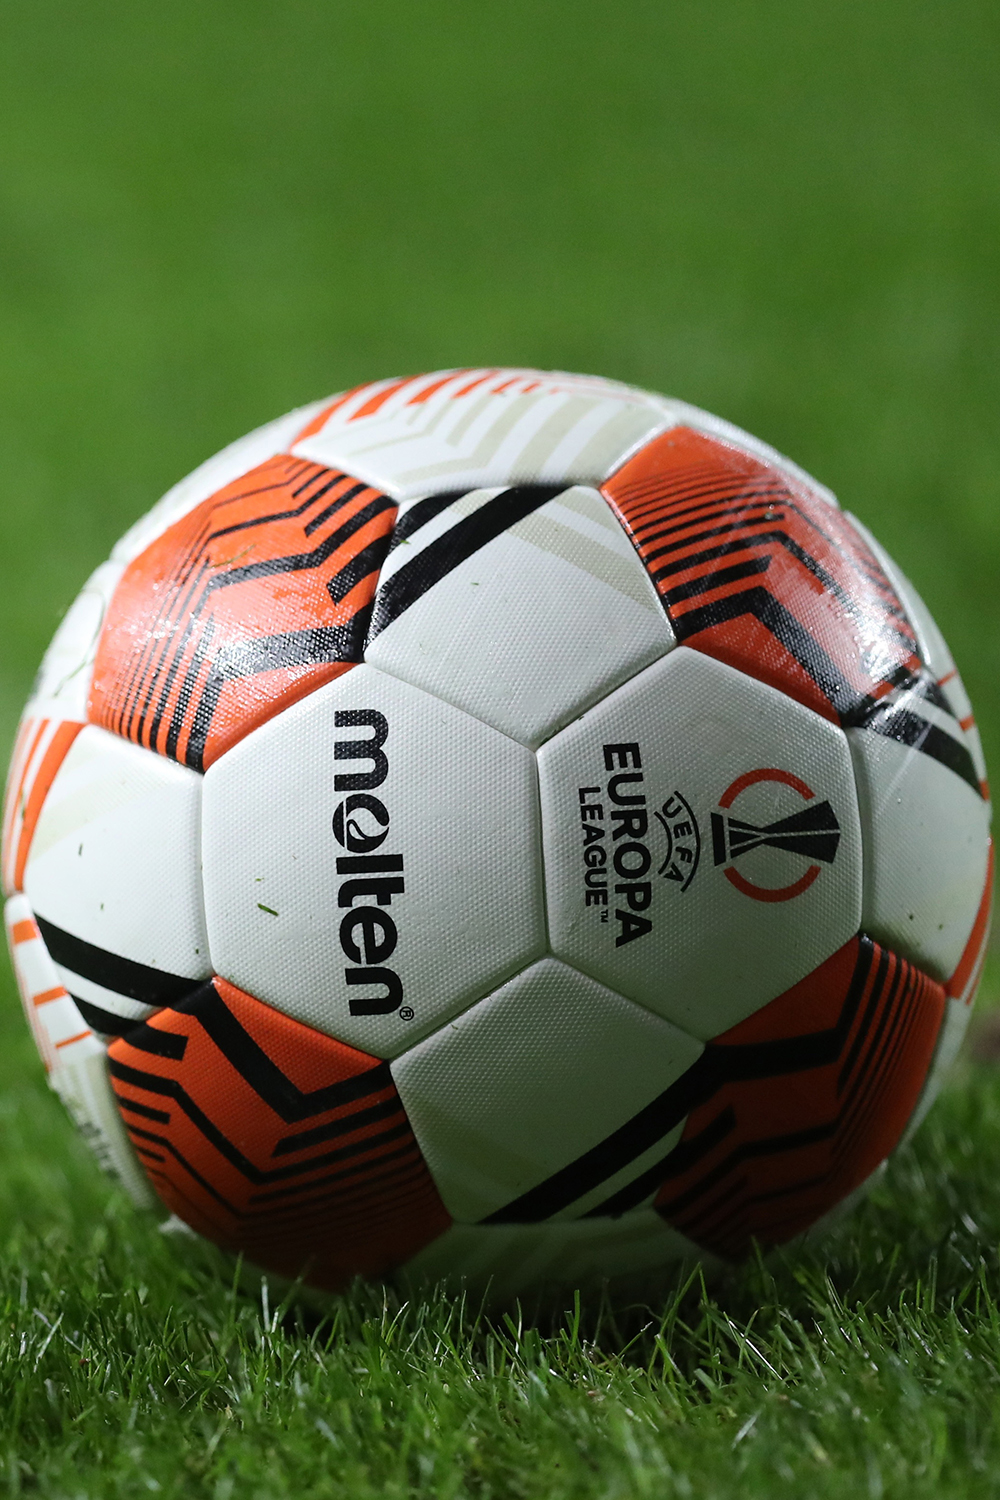 UEFA Europa League: Atalanta-Leverkusen